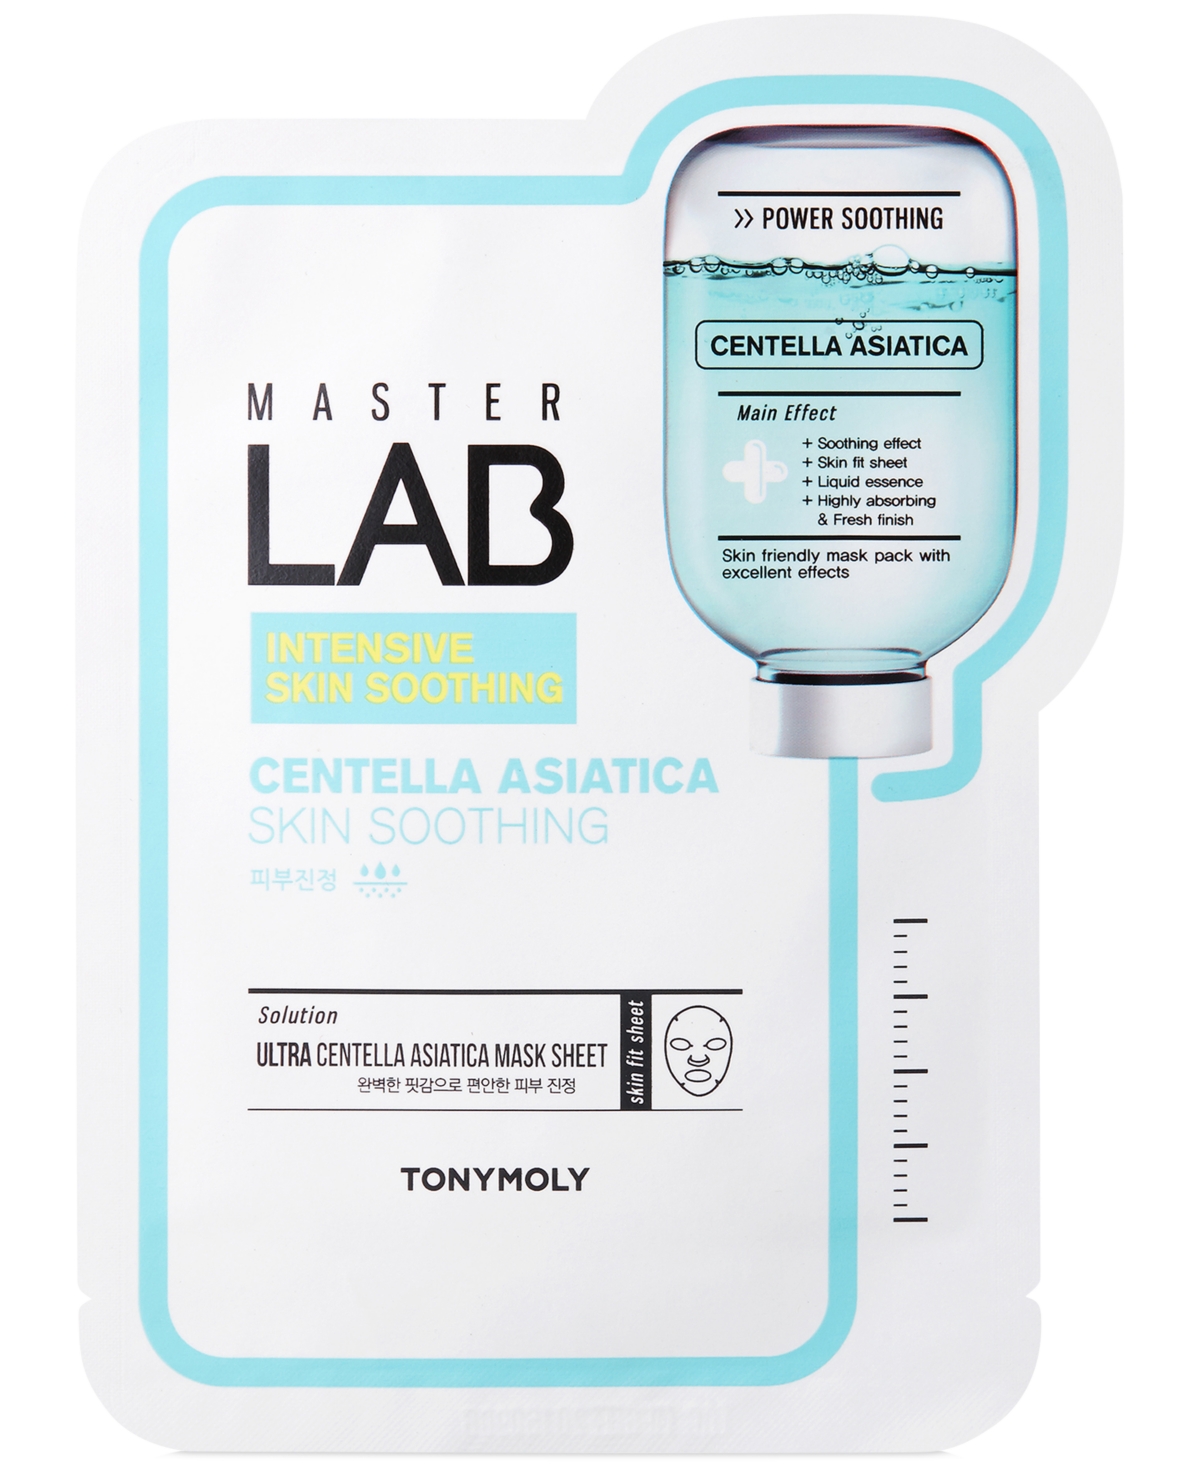 Master Lab Centella Asiatica Skin Soothing Sheet Mask